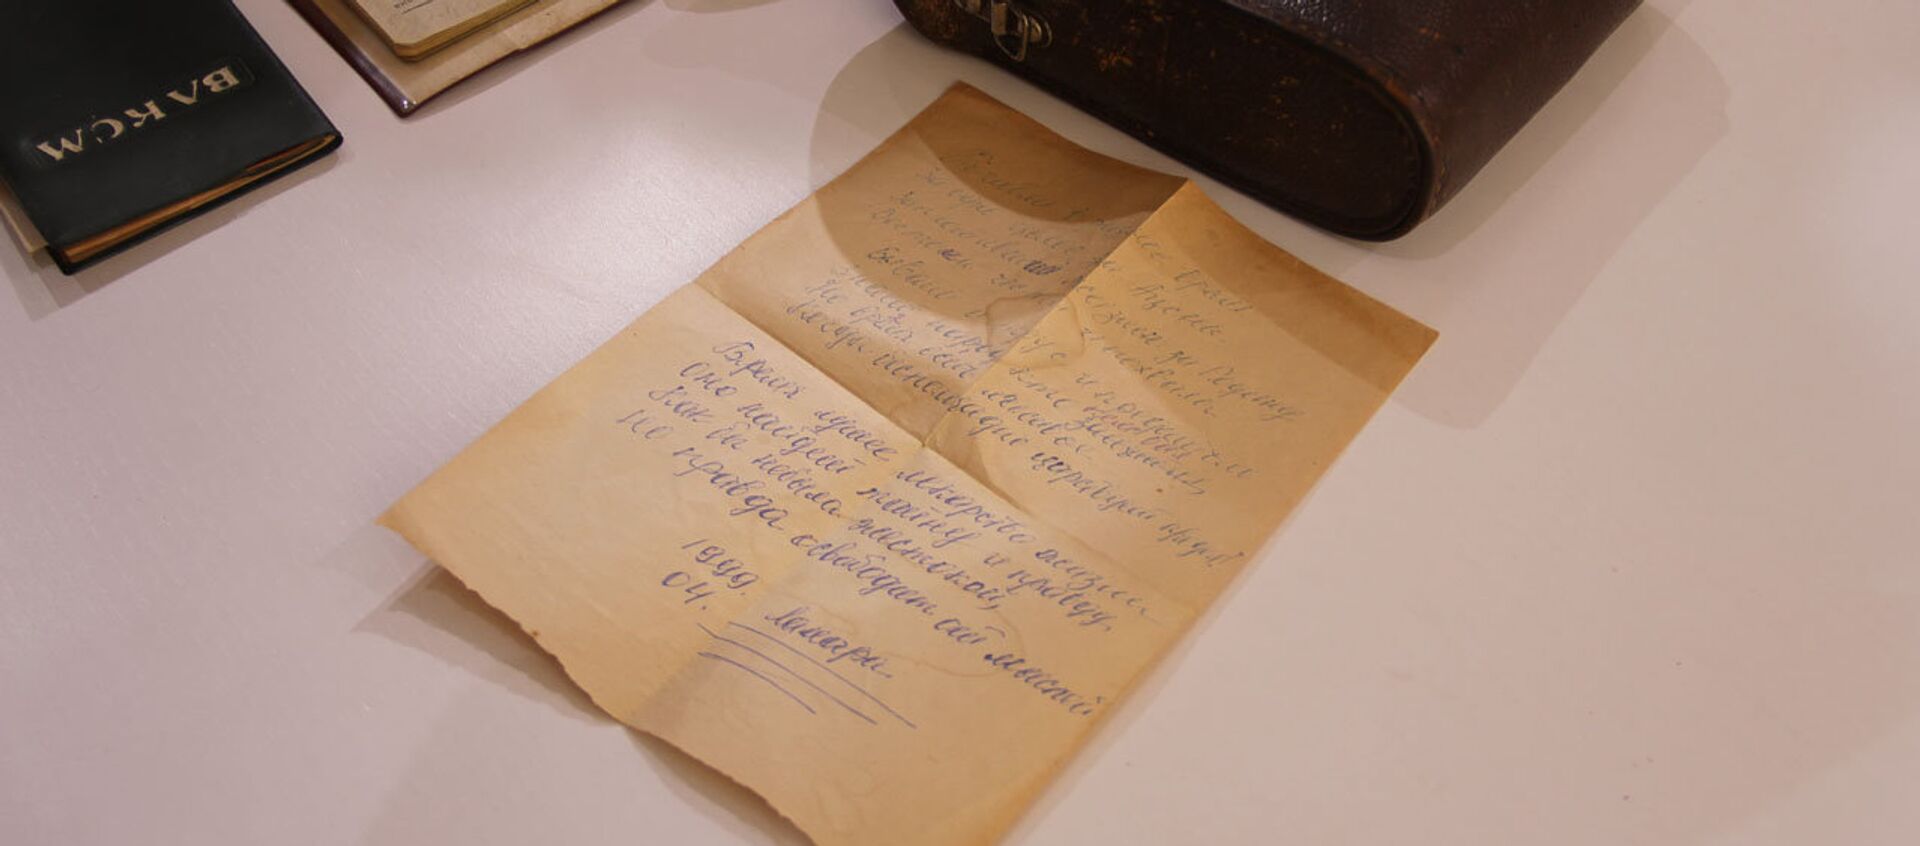 Ламара Кучуберия передала документы и вещи сына в Государственный музей Боевой Славы - Sputnik Абхазия, 1920, 18.03.2021